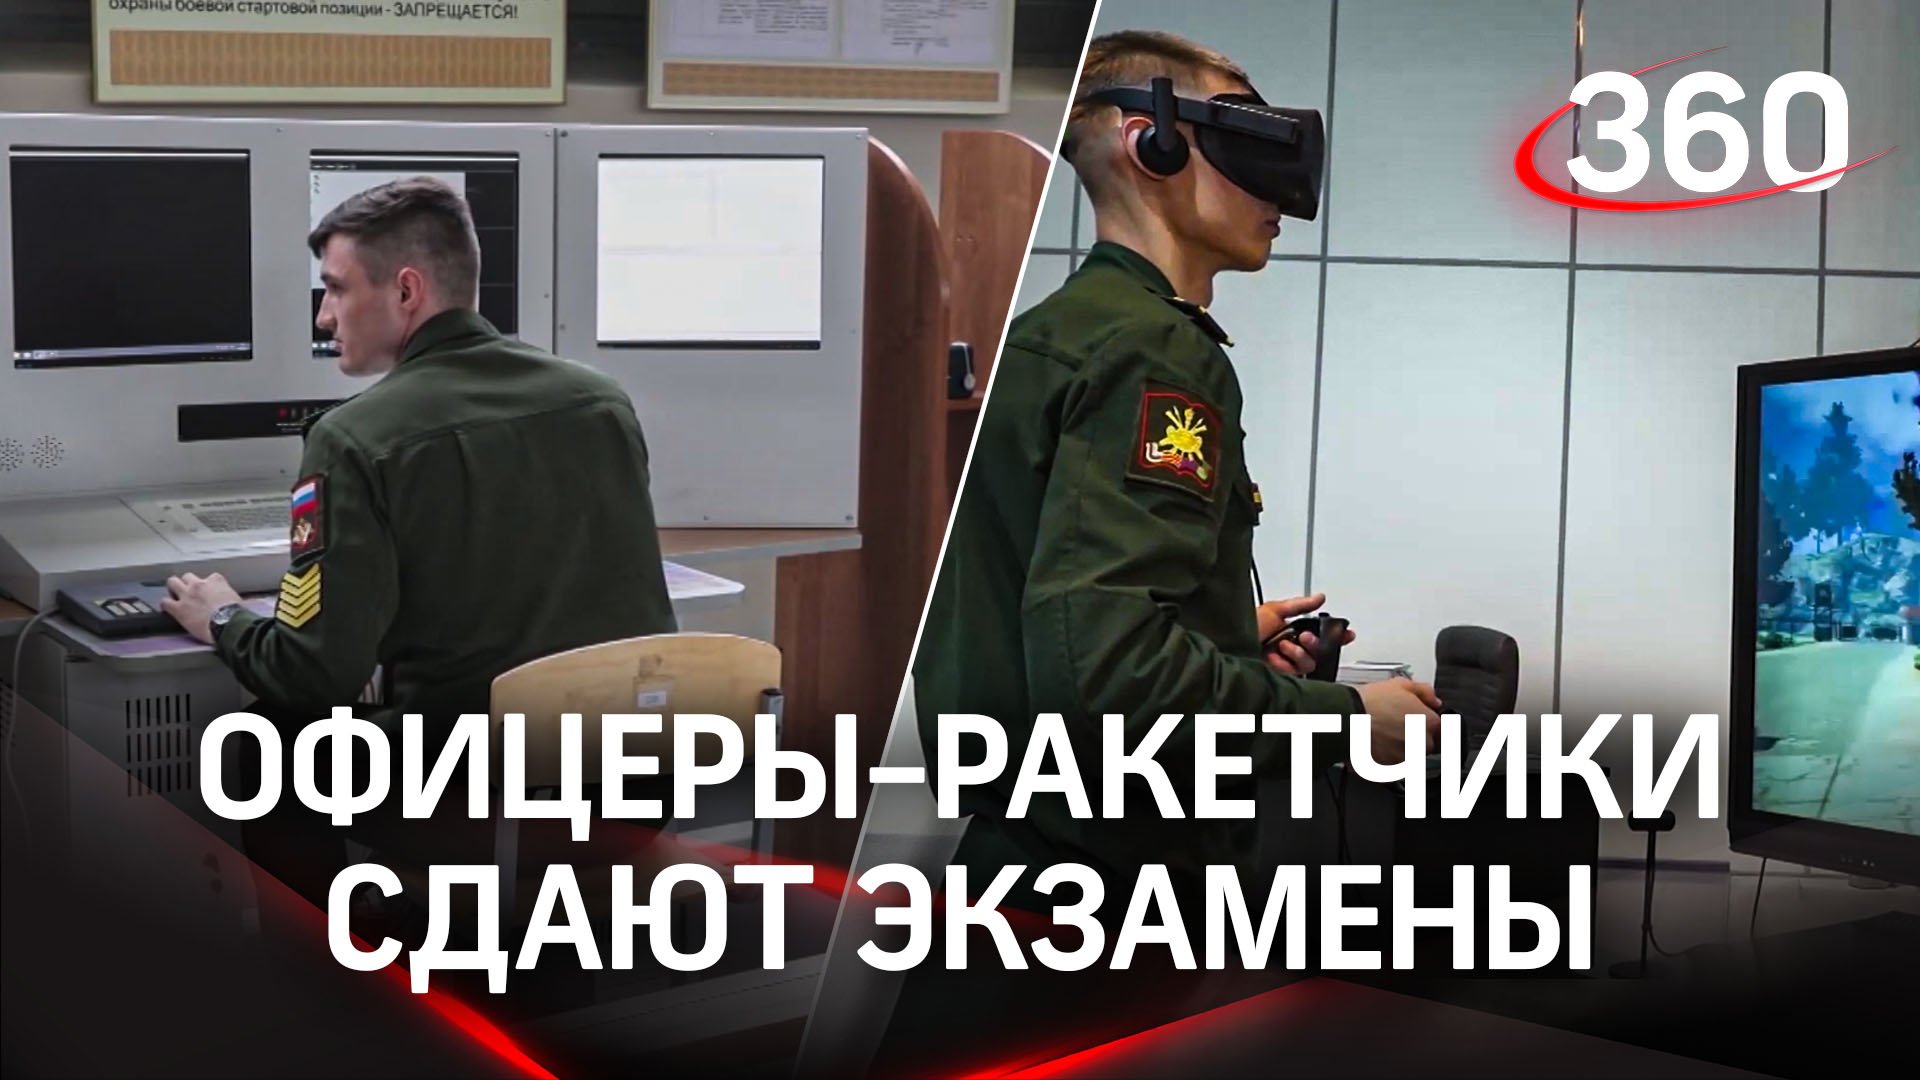 Будущие офицеры-ракетчики сдают выпускные экзамены в Военной академии РВСН им. Петра Великого